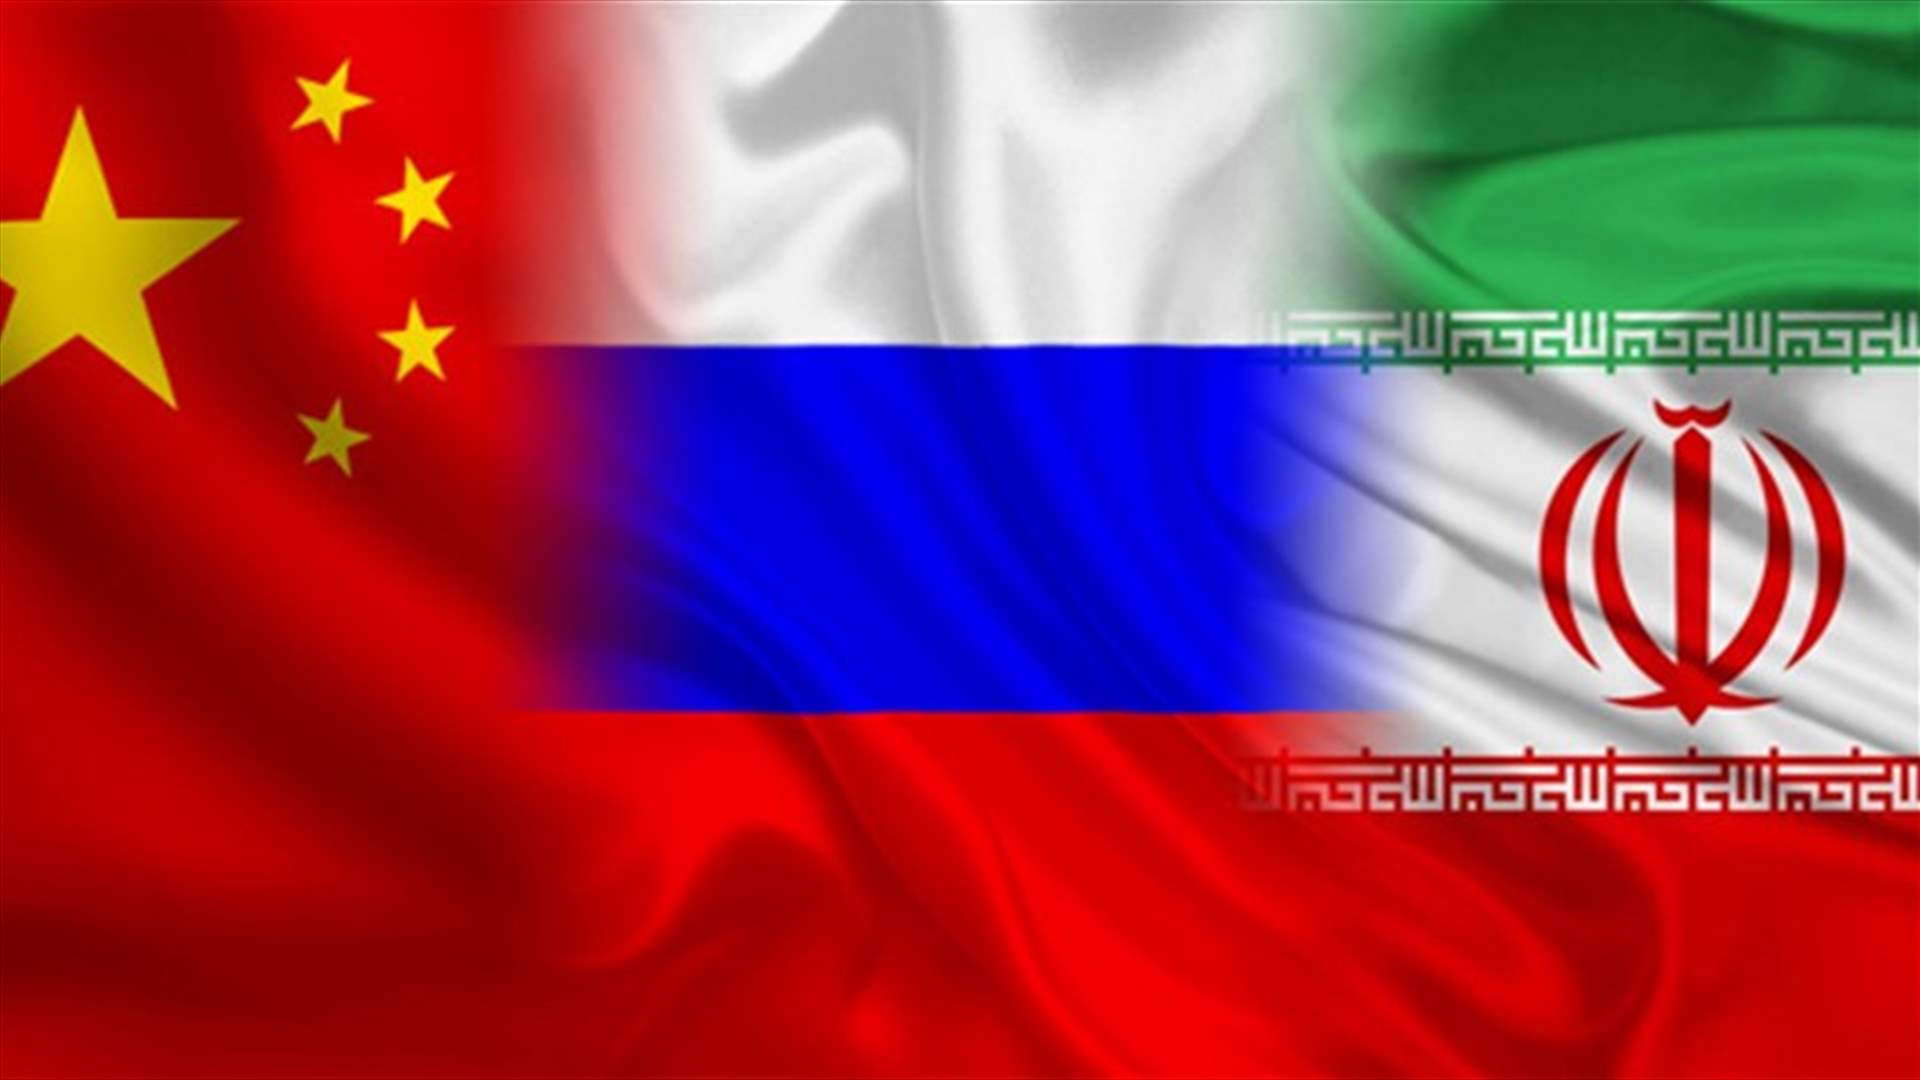 دبلوماسيون من إيران والصين وروسيا يجتمعون قبل استئناف المحادثات النووية